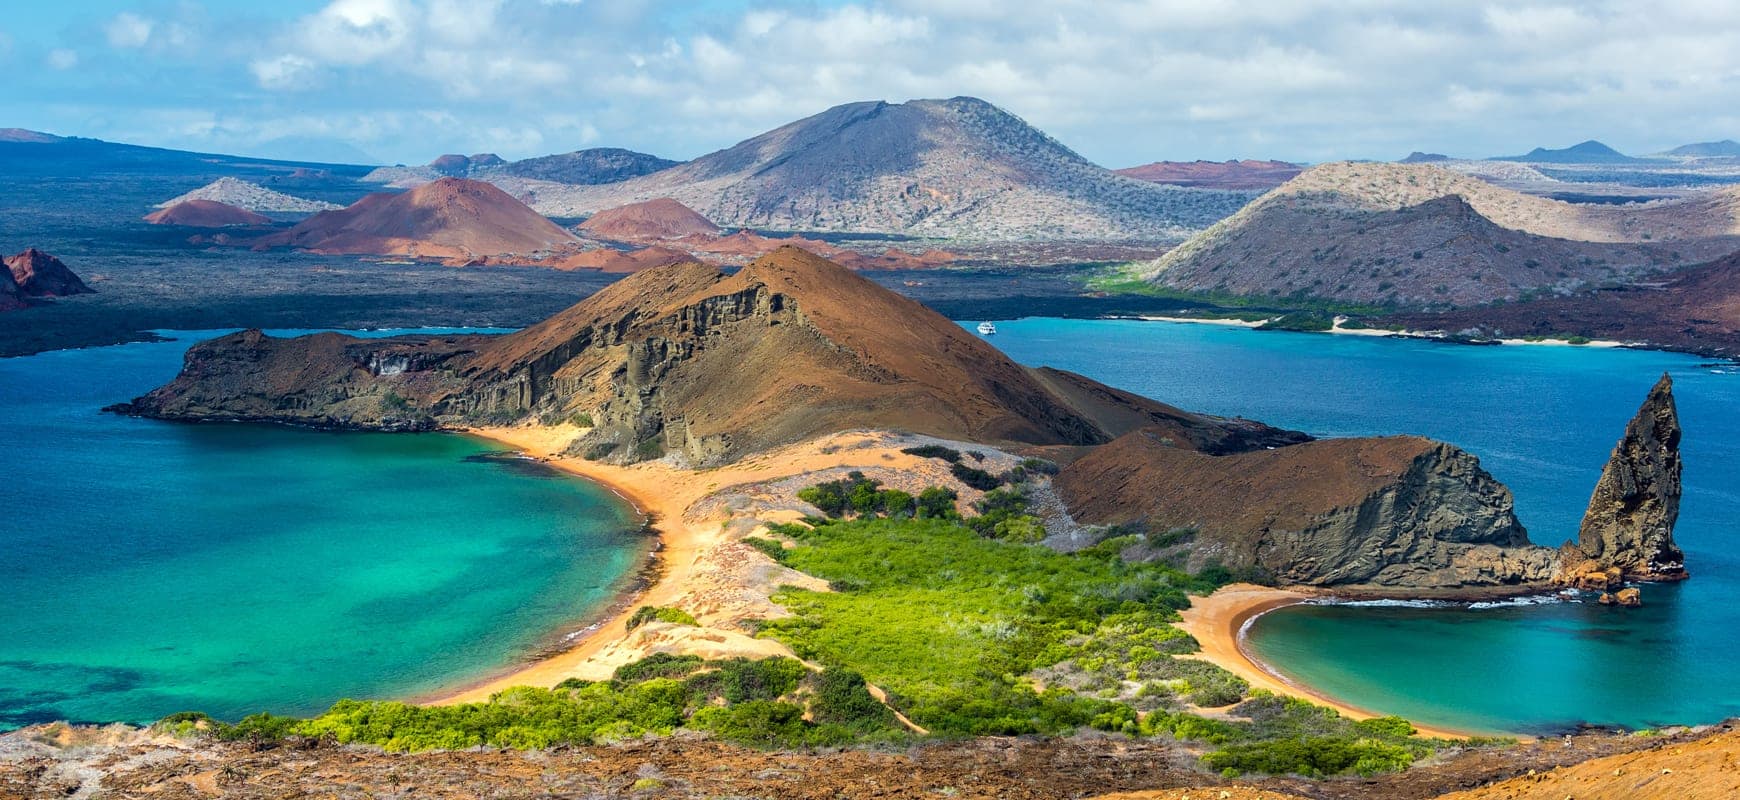 53 Croisières plongée - Galapagos - LiveAboard.com